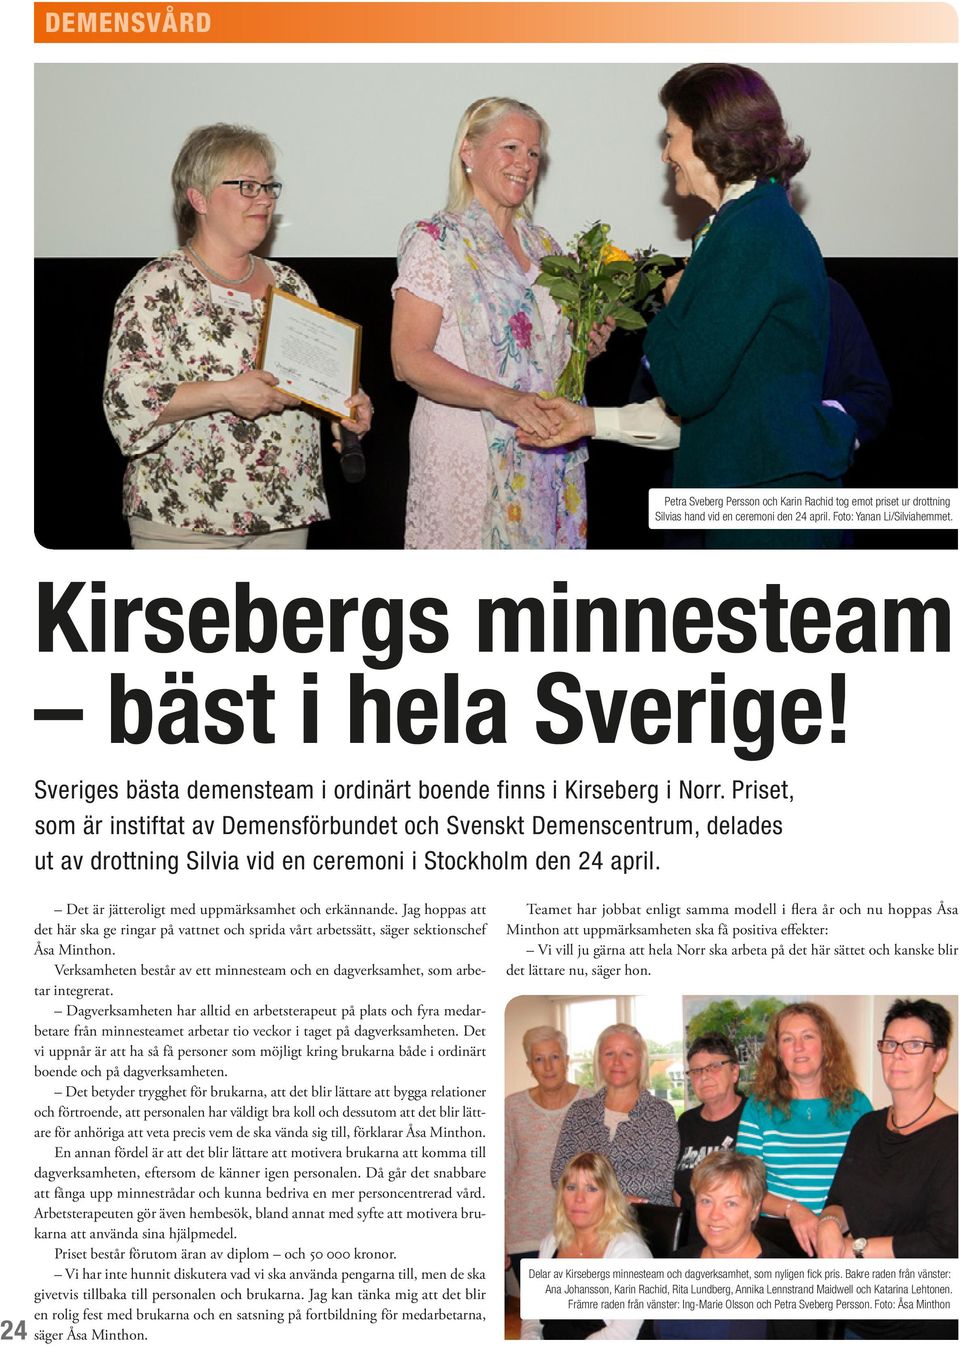 Priset, som är instiftat av Demensförbundet och Svenskt Demenscentrum, delades ut av drottning Silvia vid en ceremoni i Stockholm den 24 april. 24 Det är jätteroligt med uppmärksamhet och erkännande.